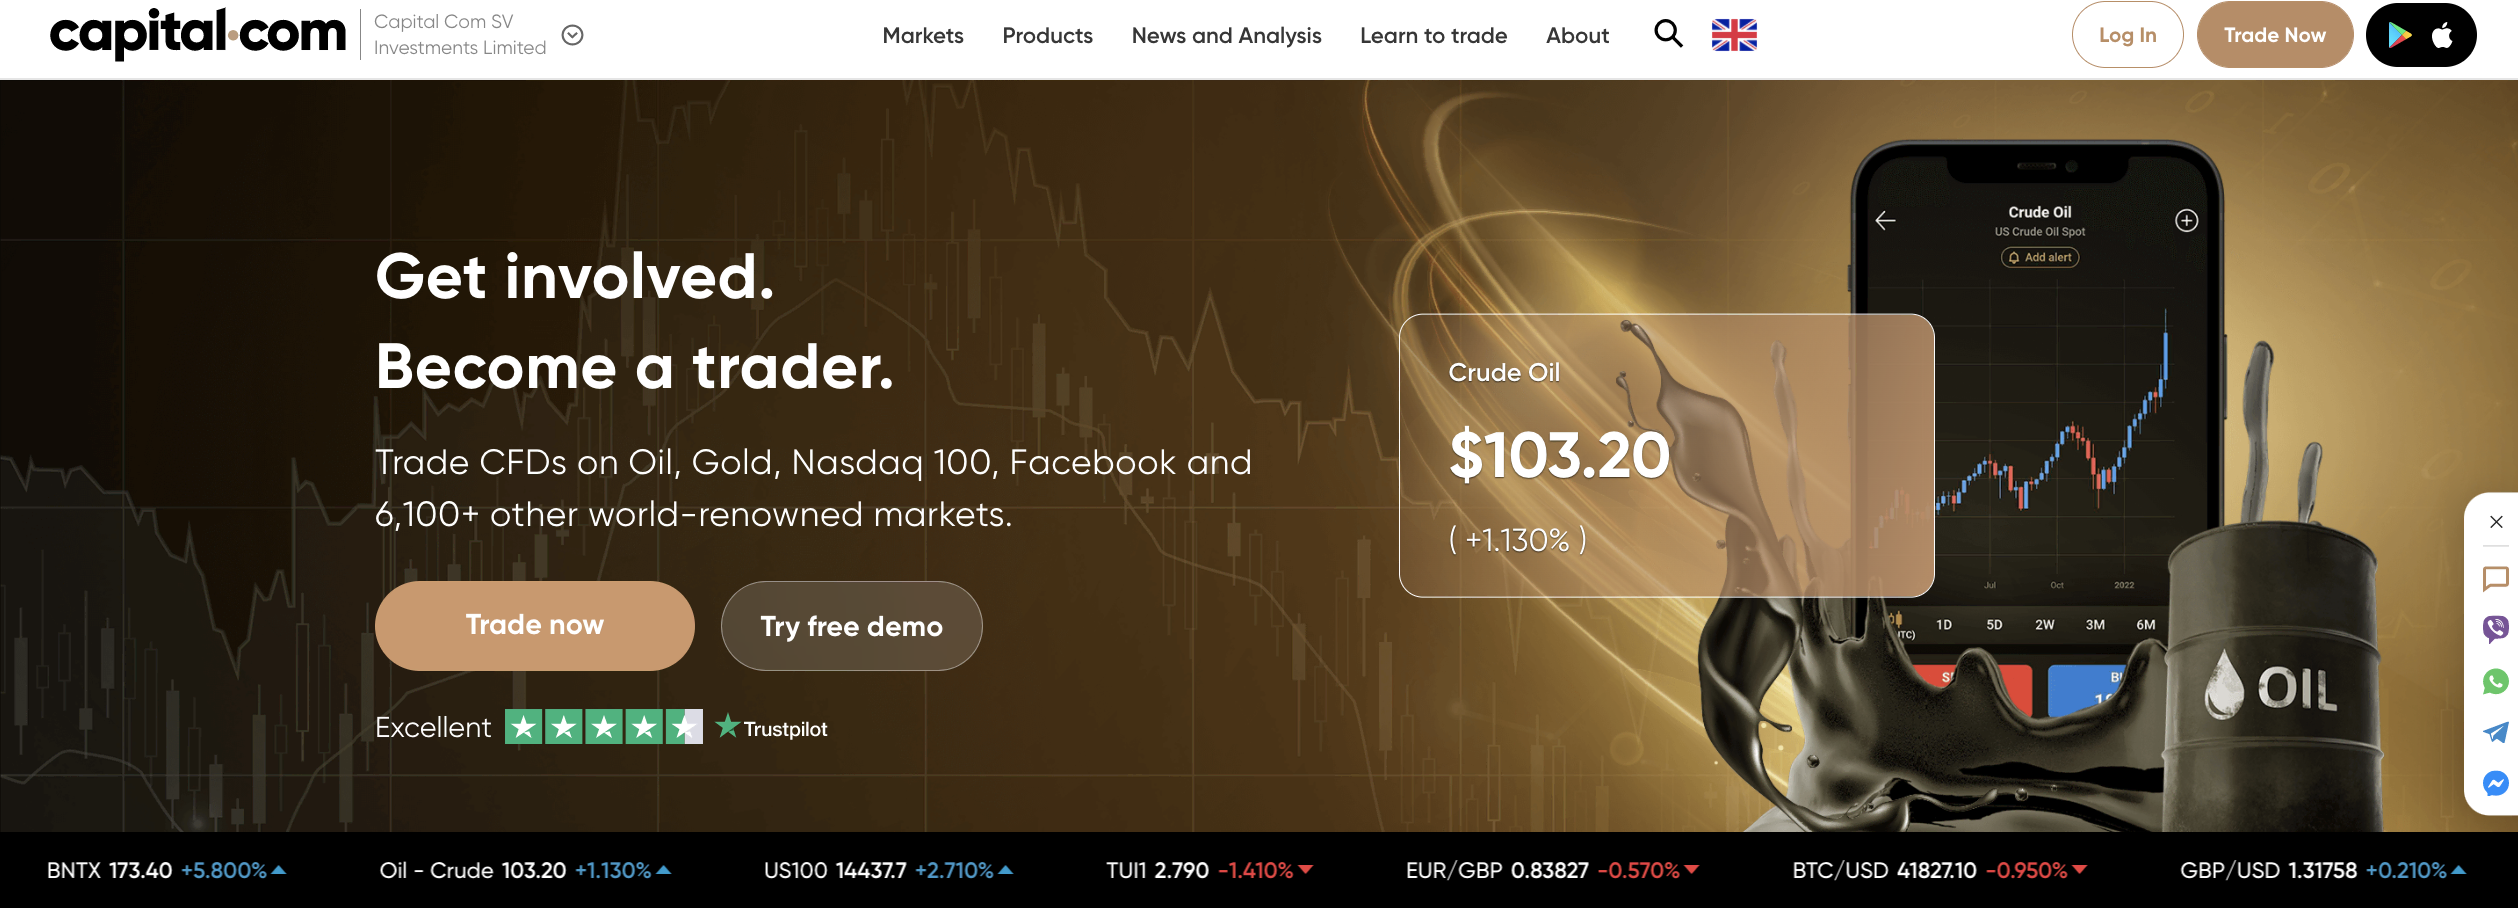 Site-ul oficial al brokerului valutar Capital.com